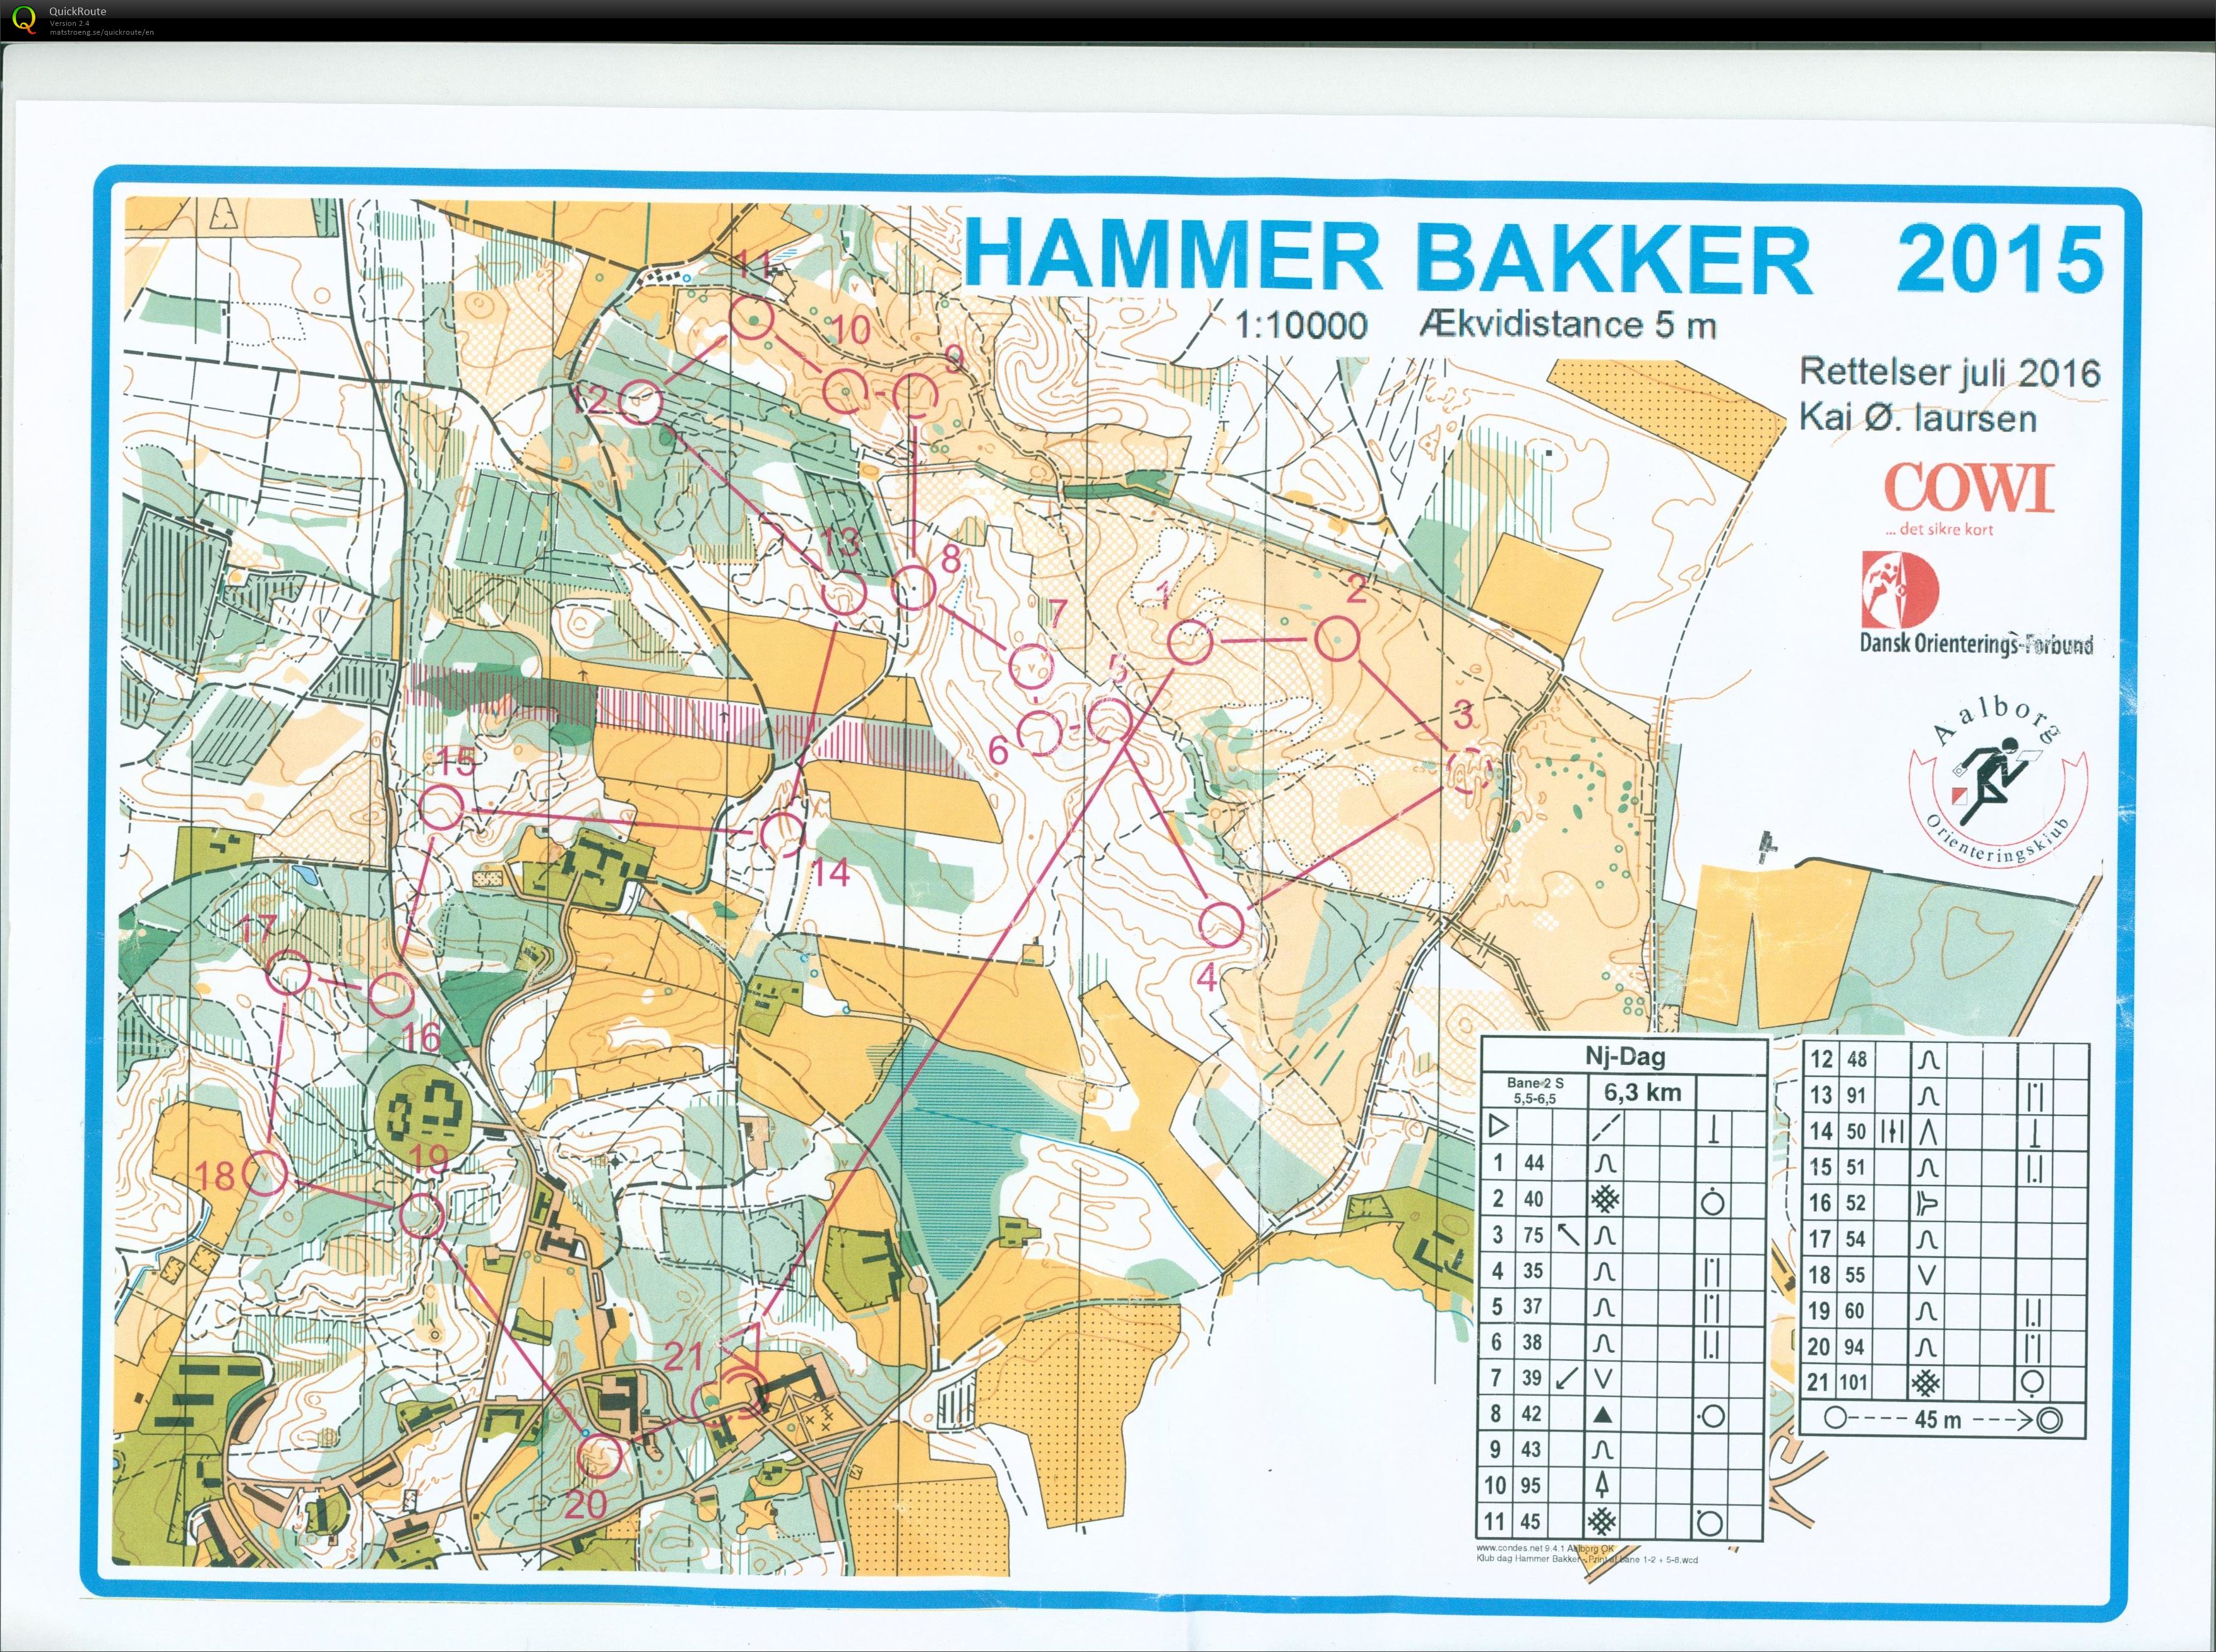 Hammer Bakker bane 2 Keld Gade (13/11/2016)